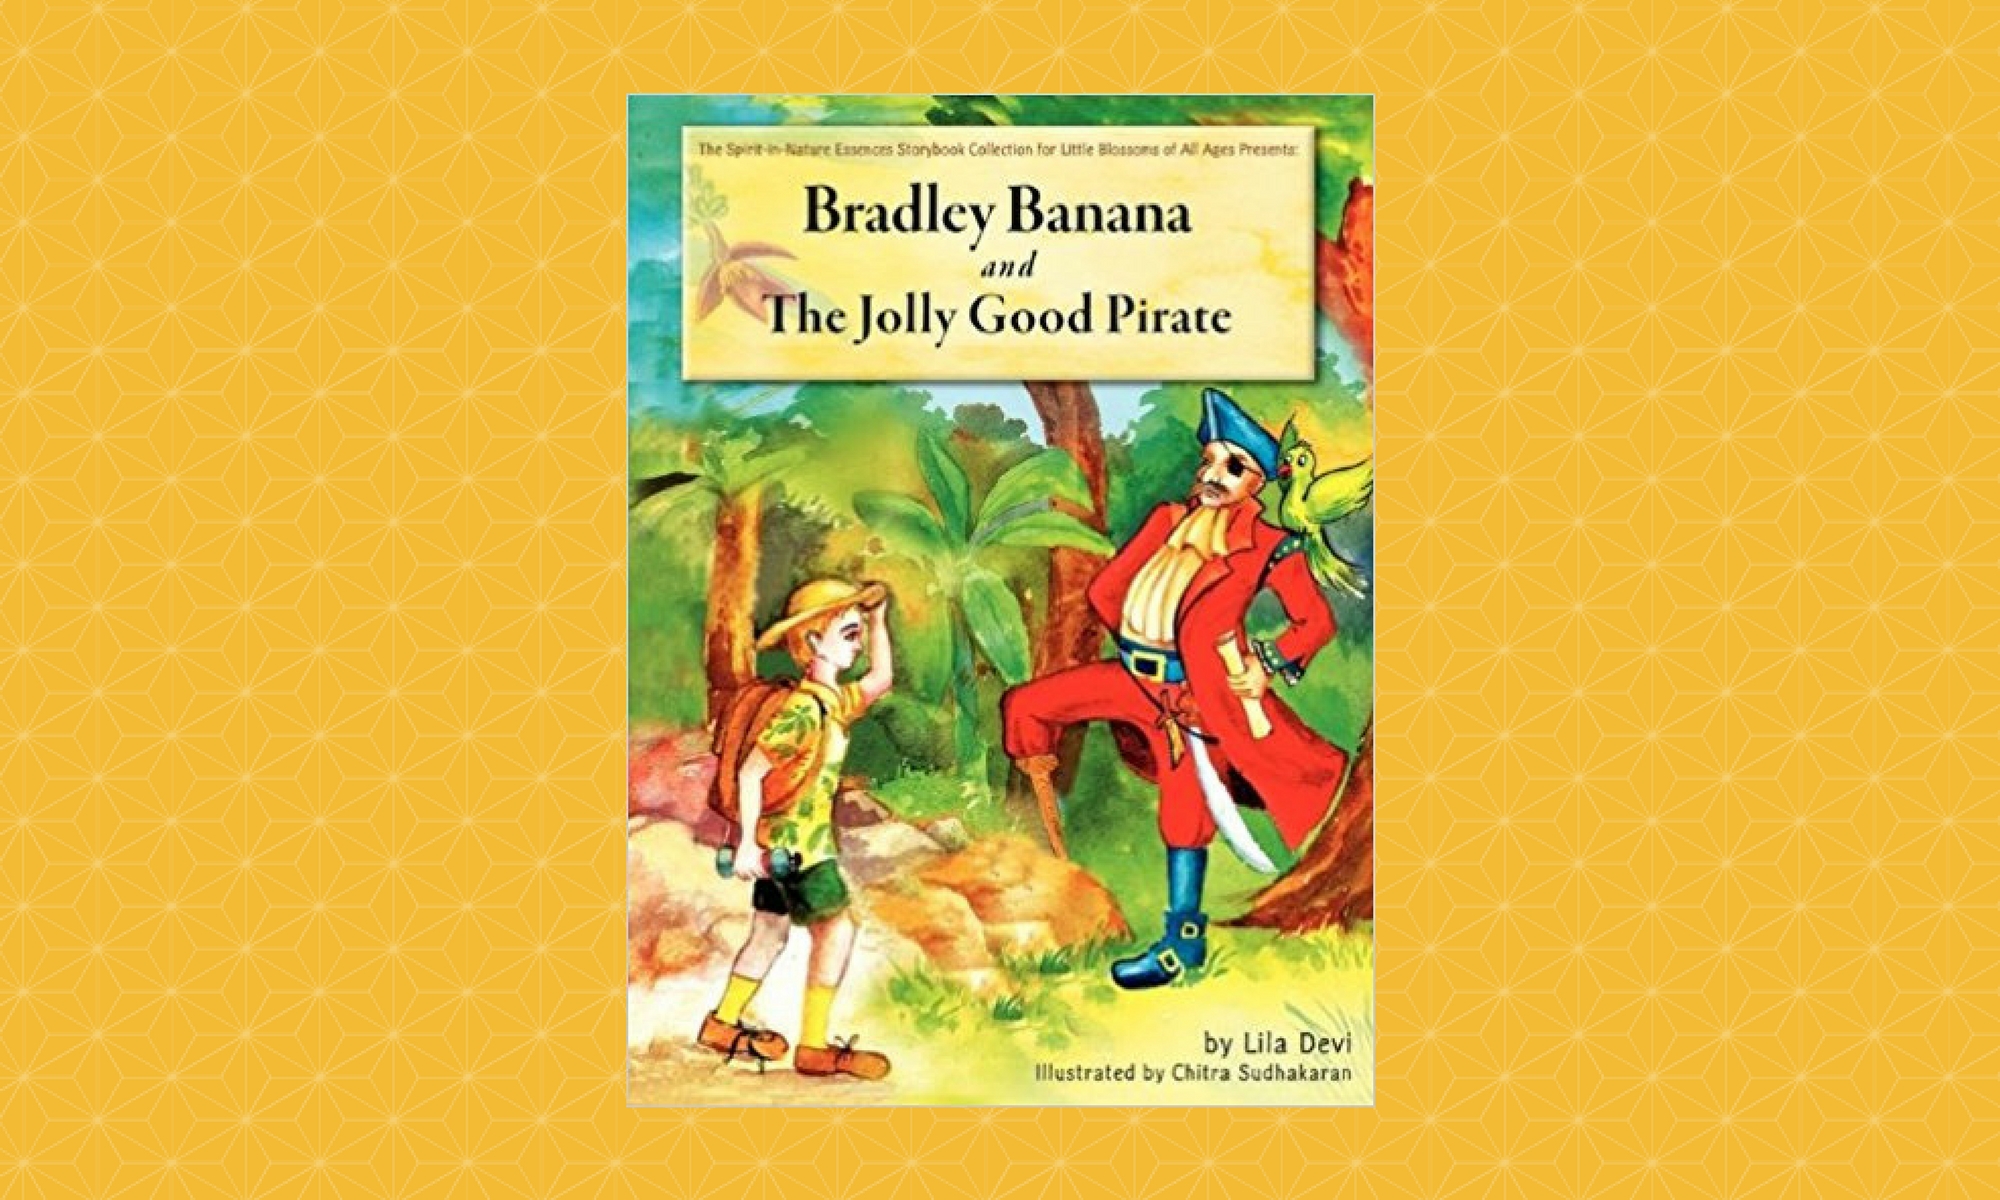 liladeviauthor.com, bradley banana and the jolly good pirate, lila devi,